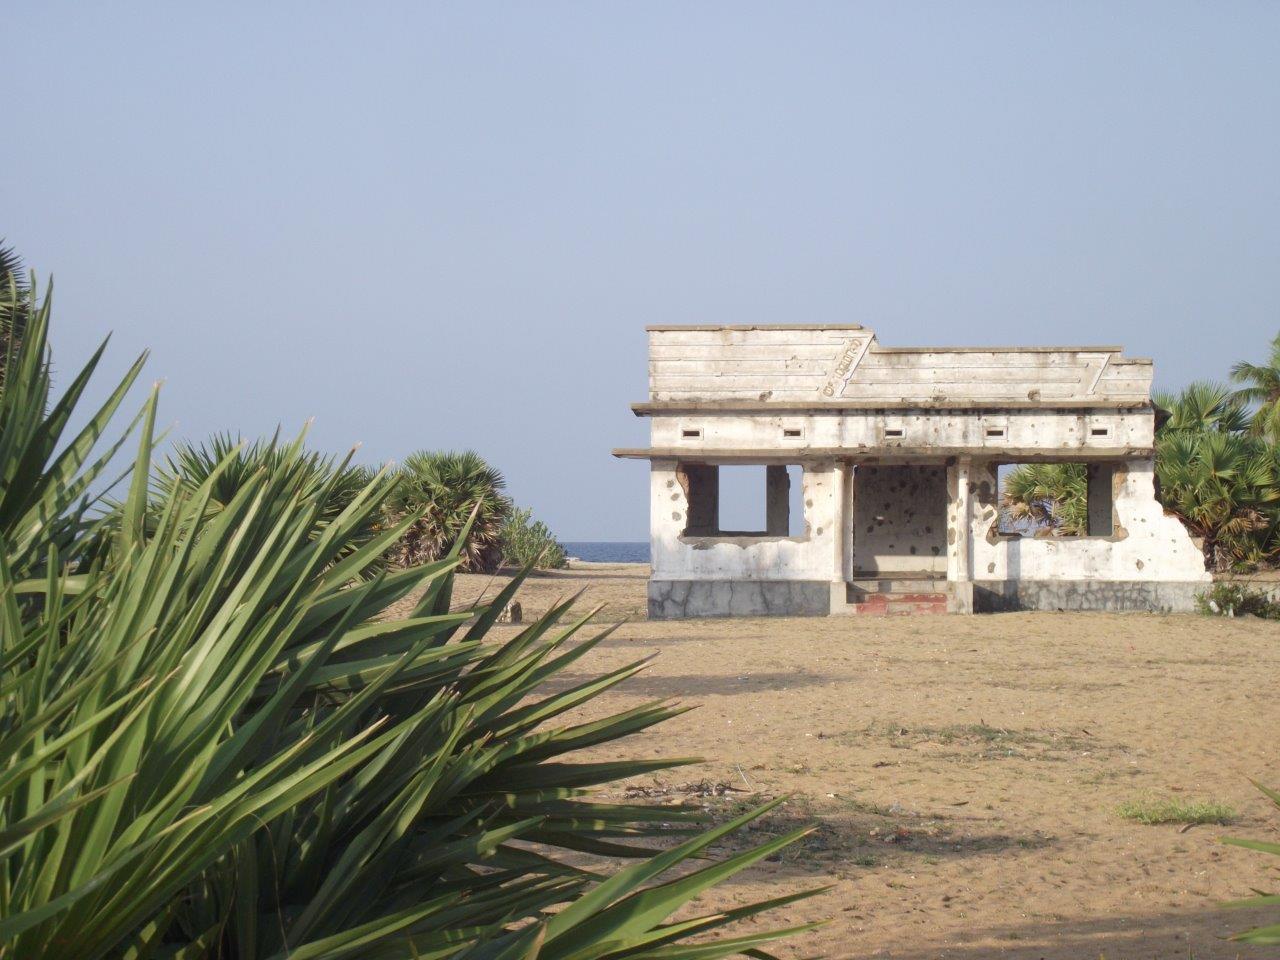 Vista de una casa situada al borde del océano, destruida y llena de impactos de bala.